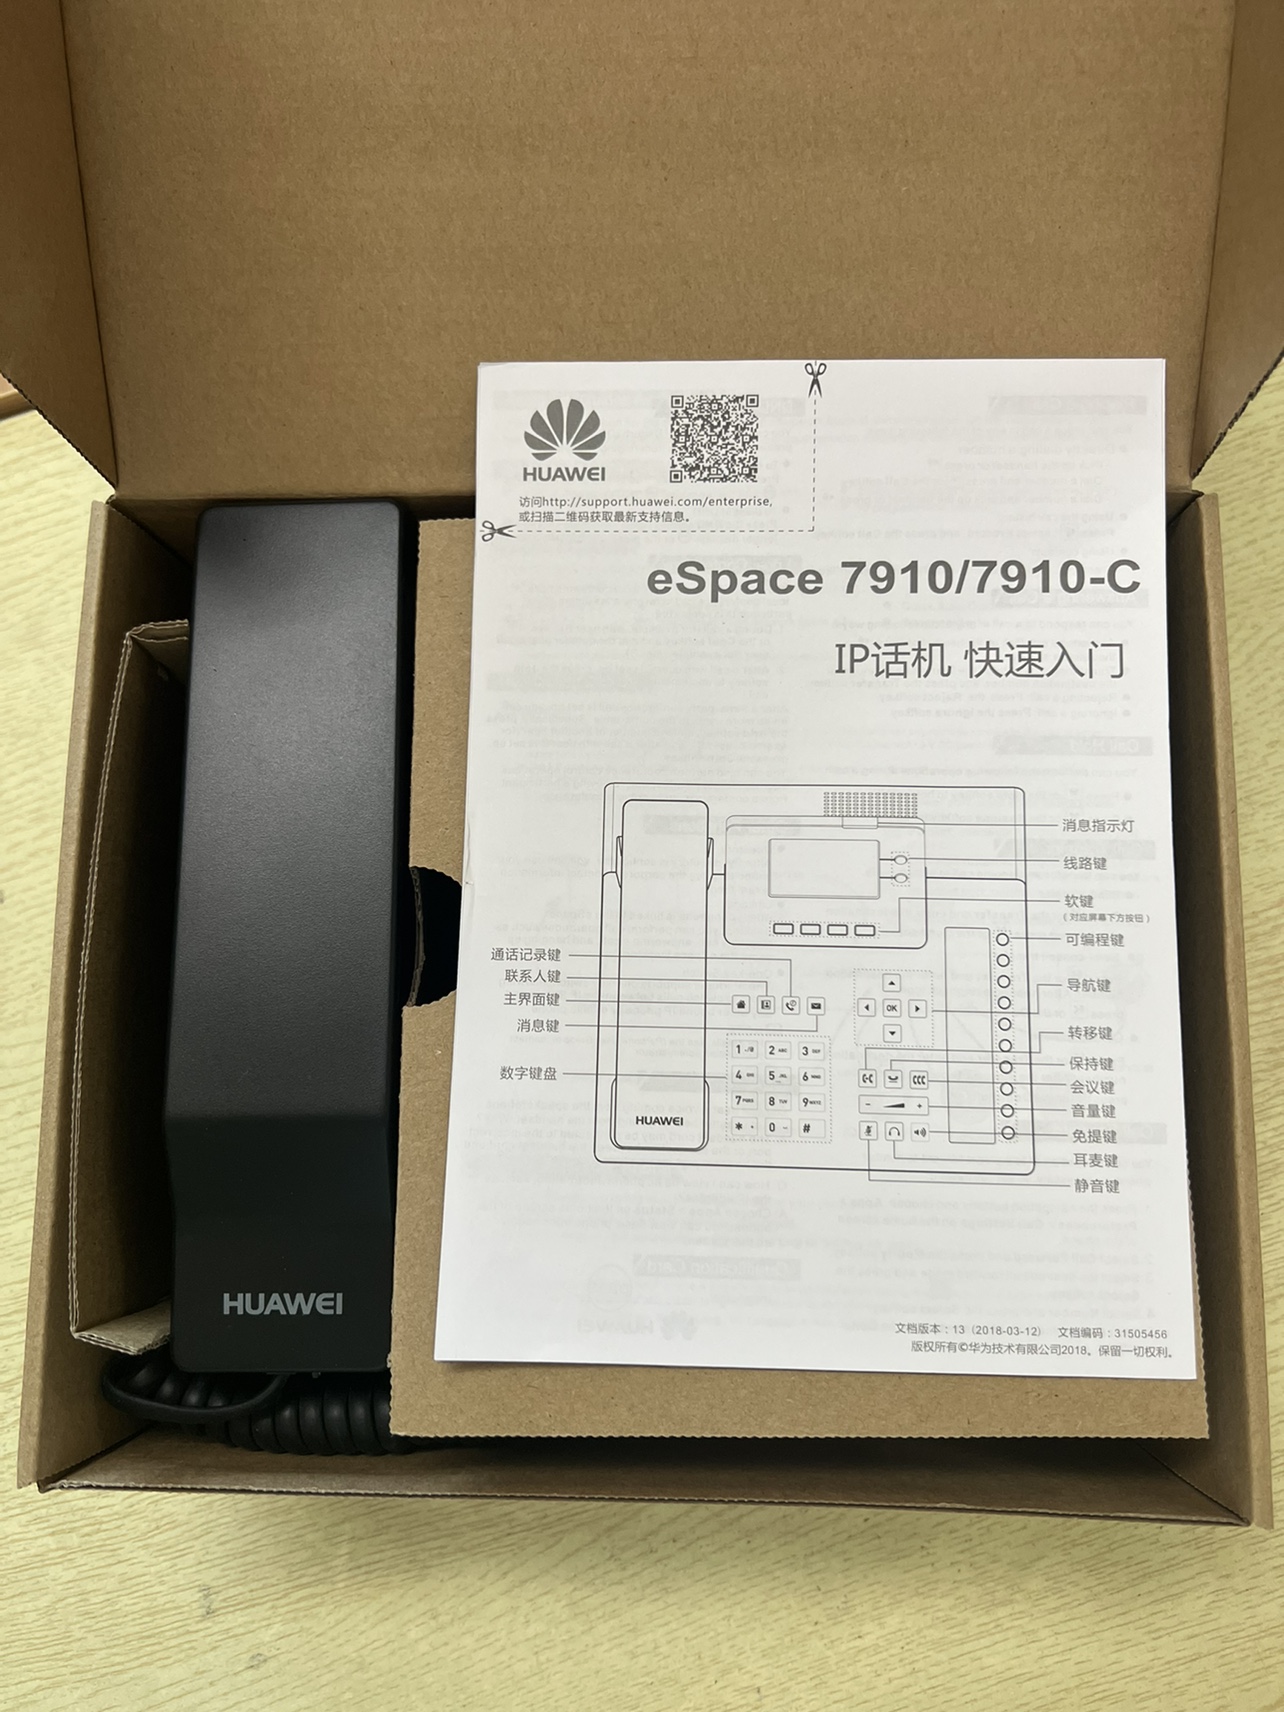 华为IP电话机eSpace 7910 座机 九成新带原装包装盒 3C数码配件 USB电话机/网络电话机 原图主图